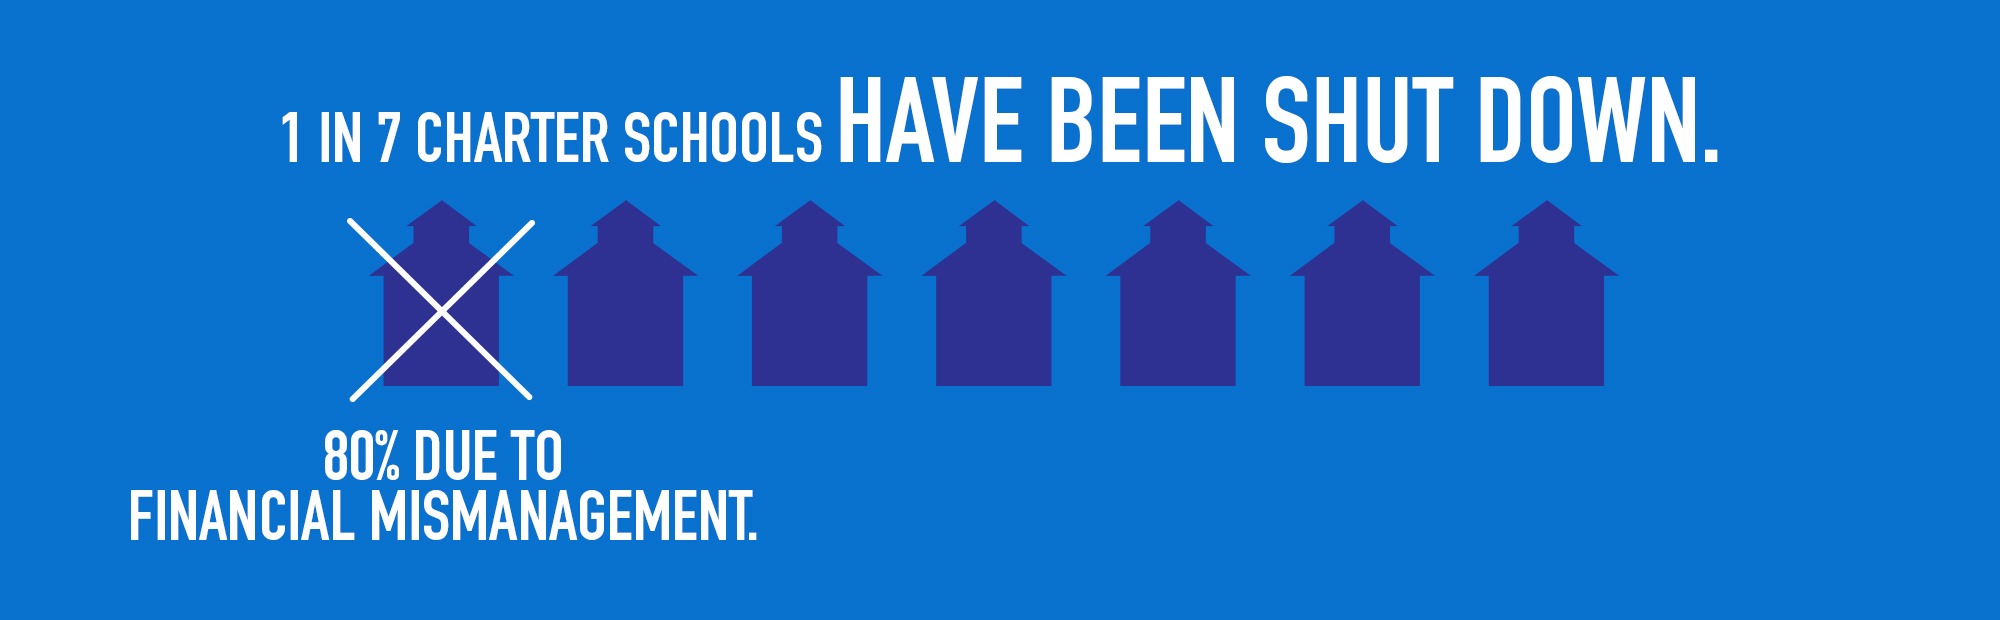 1 in 7 charter schools have been shut down